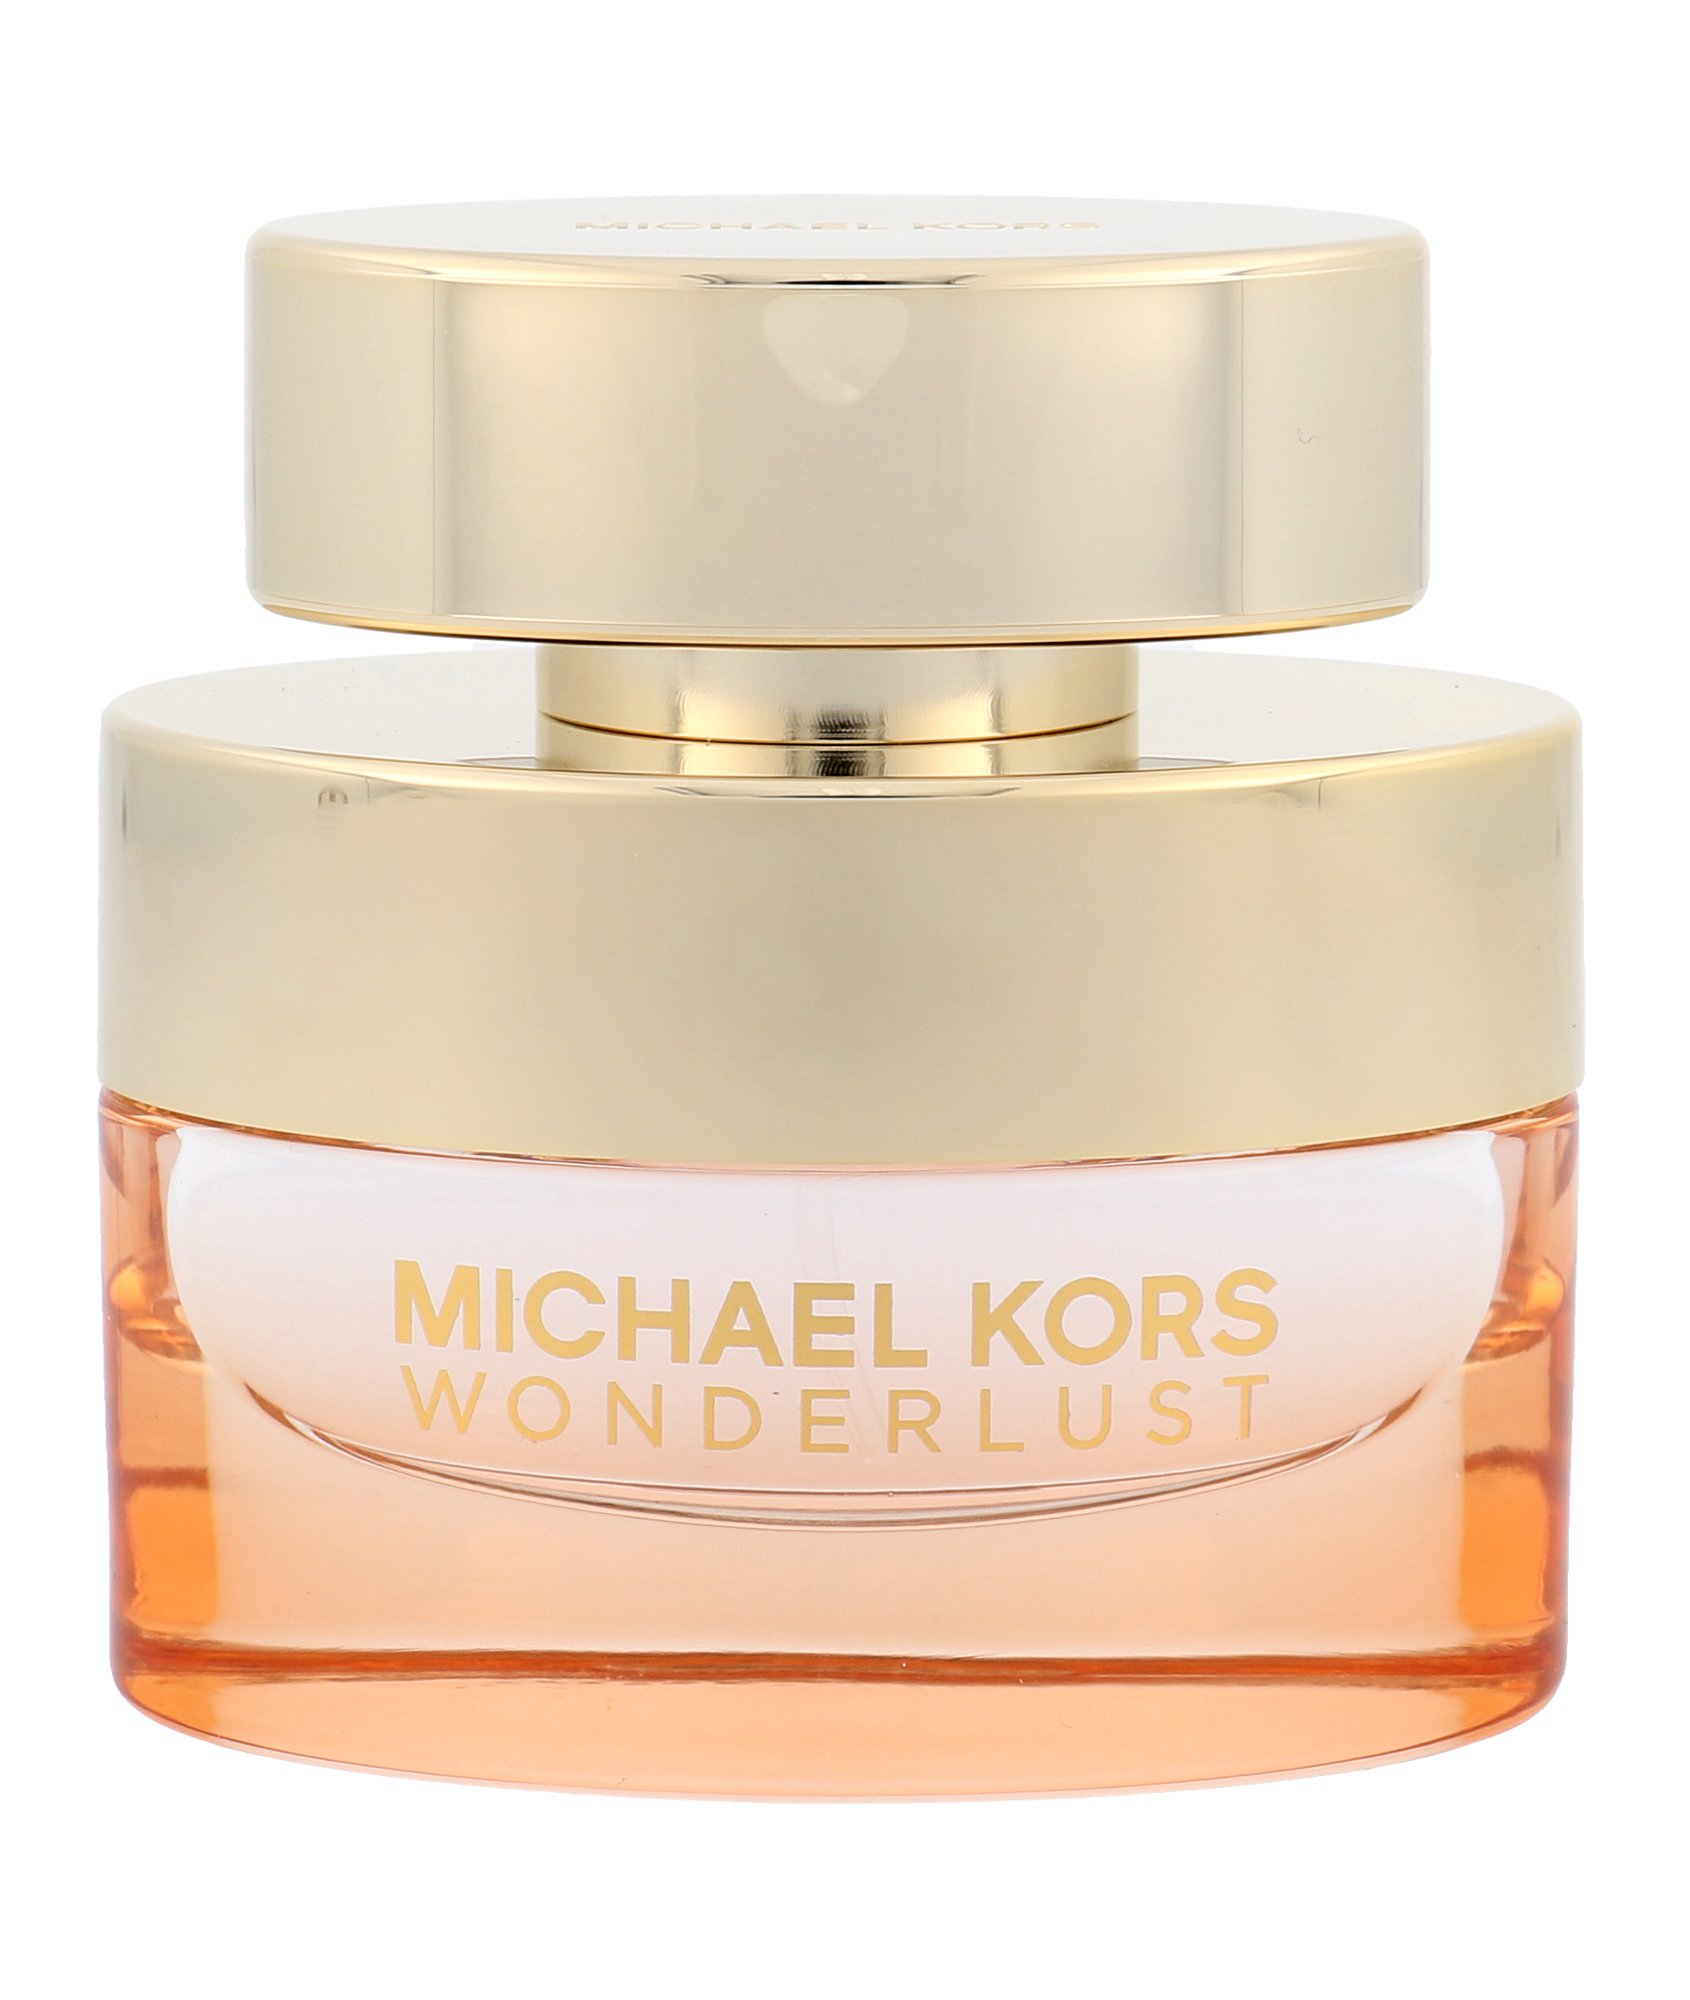 Michael Kors Wonderlust, Parfumovaná voda 50ml